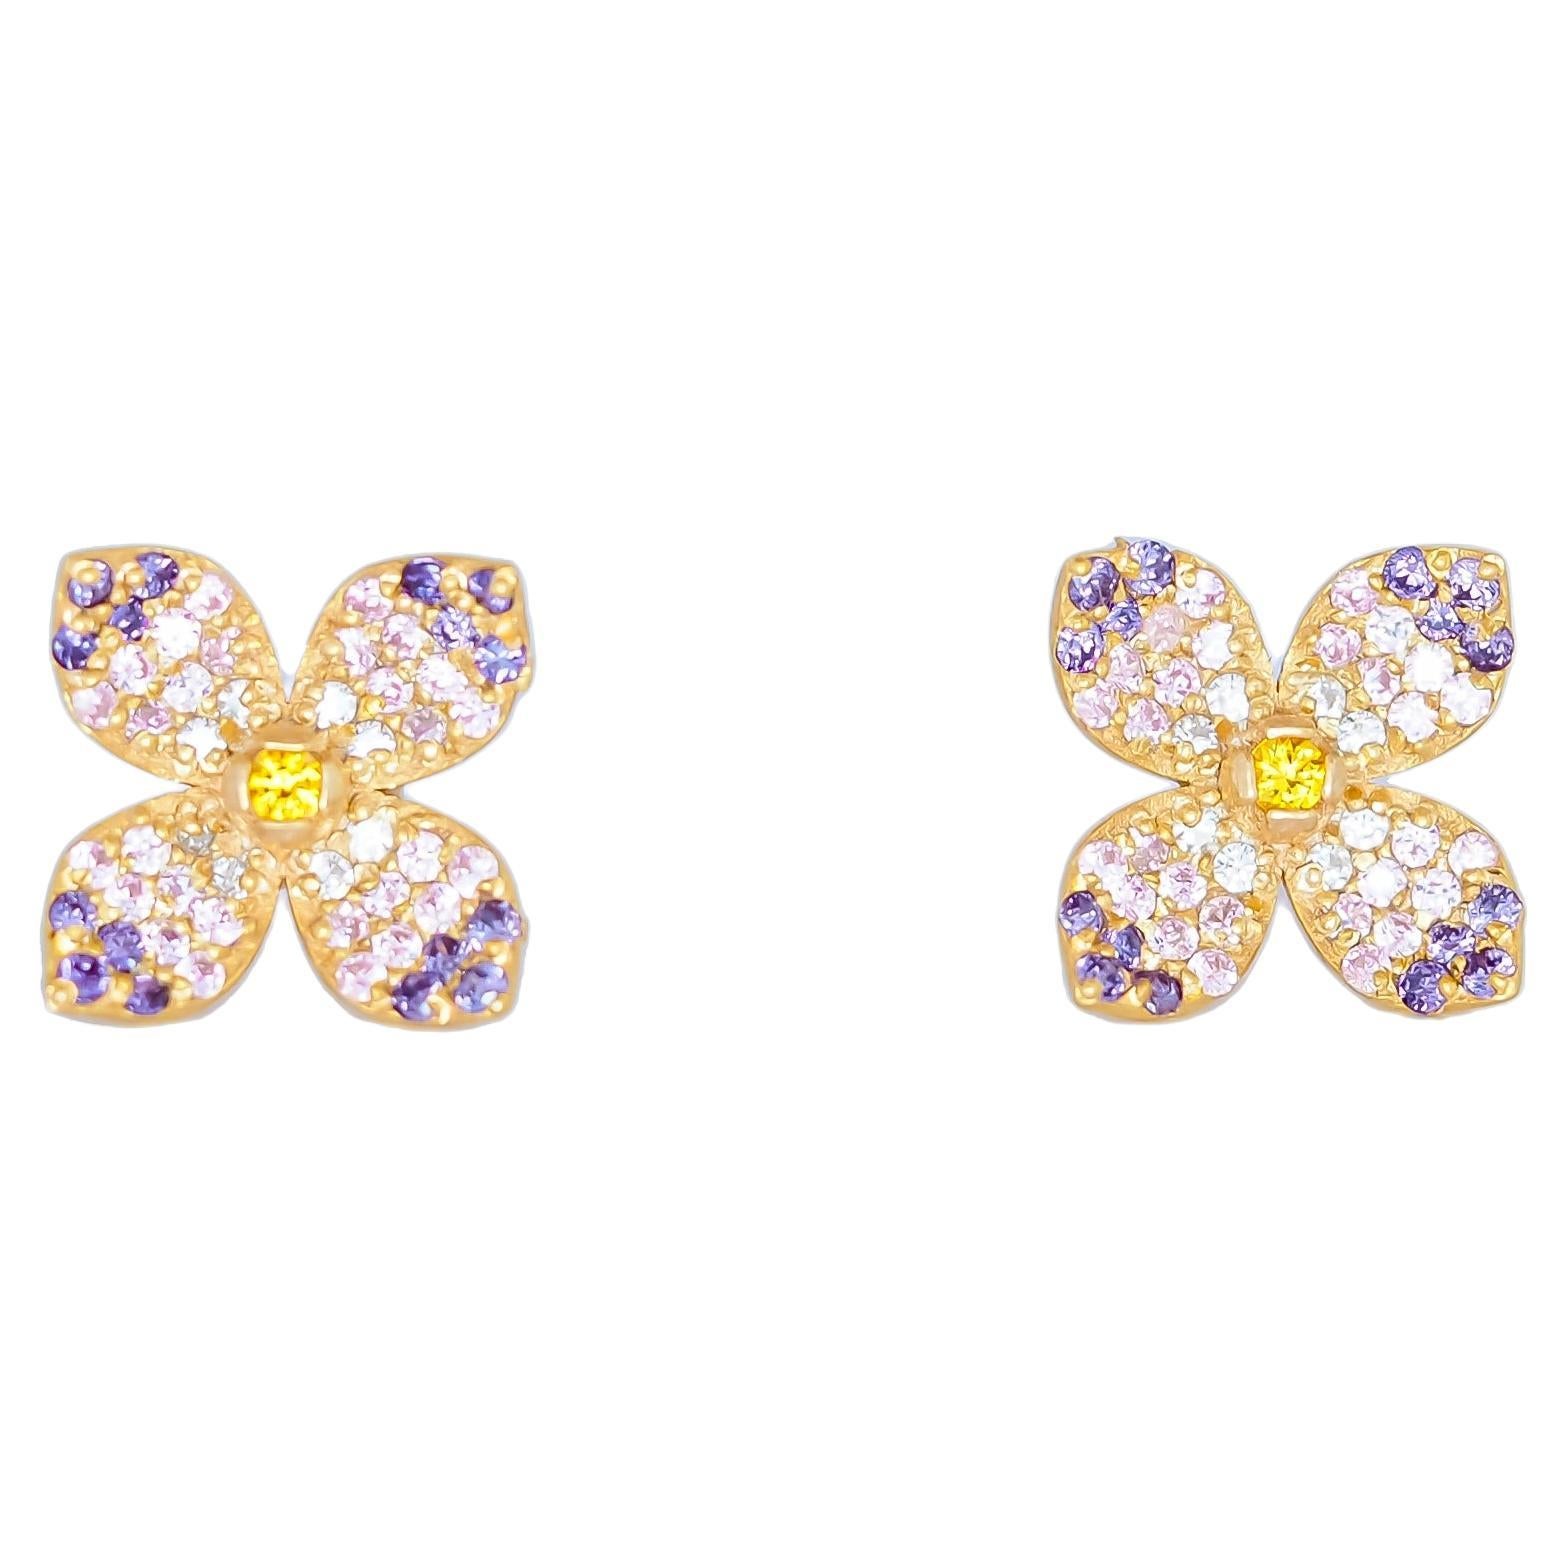 Flower earrings studs in 14k gold